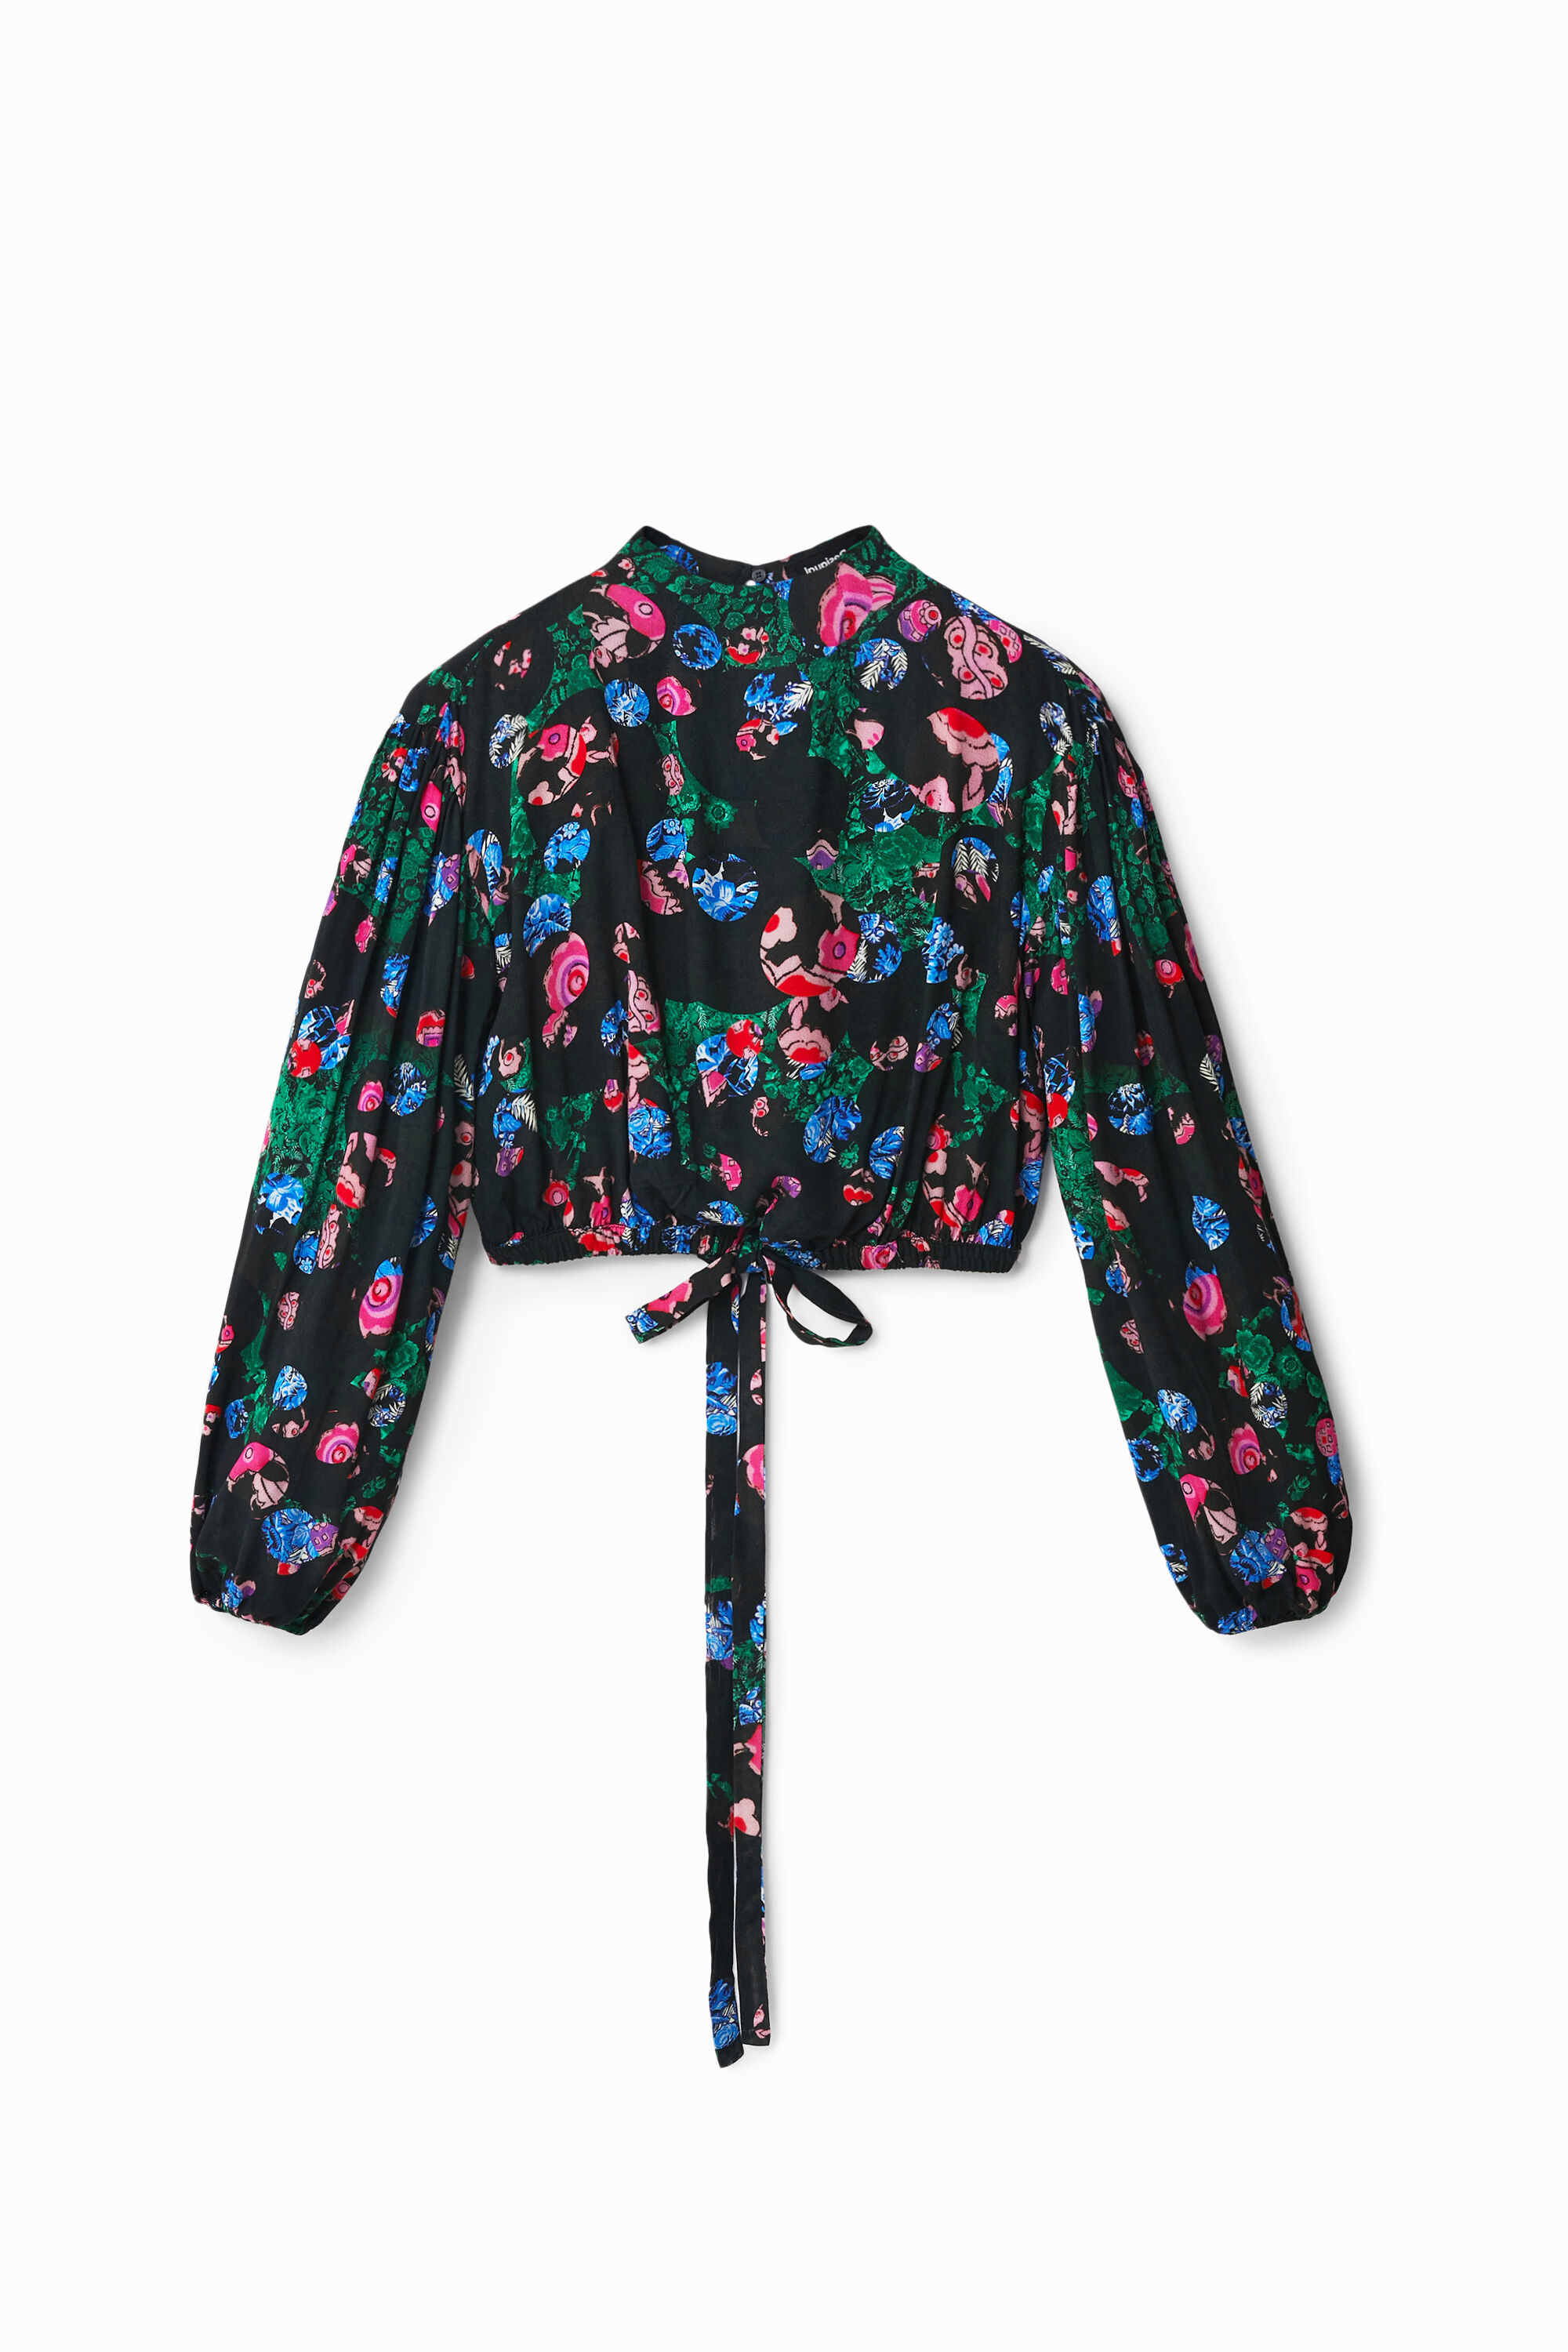 M. Christian Lacroix cropped floral blouse - BLACK - XS